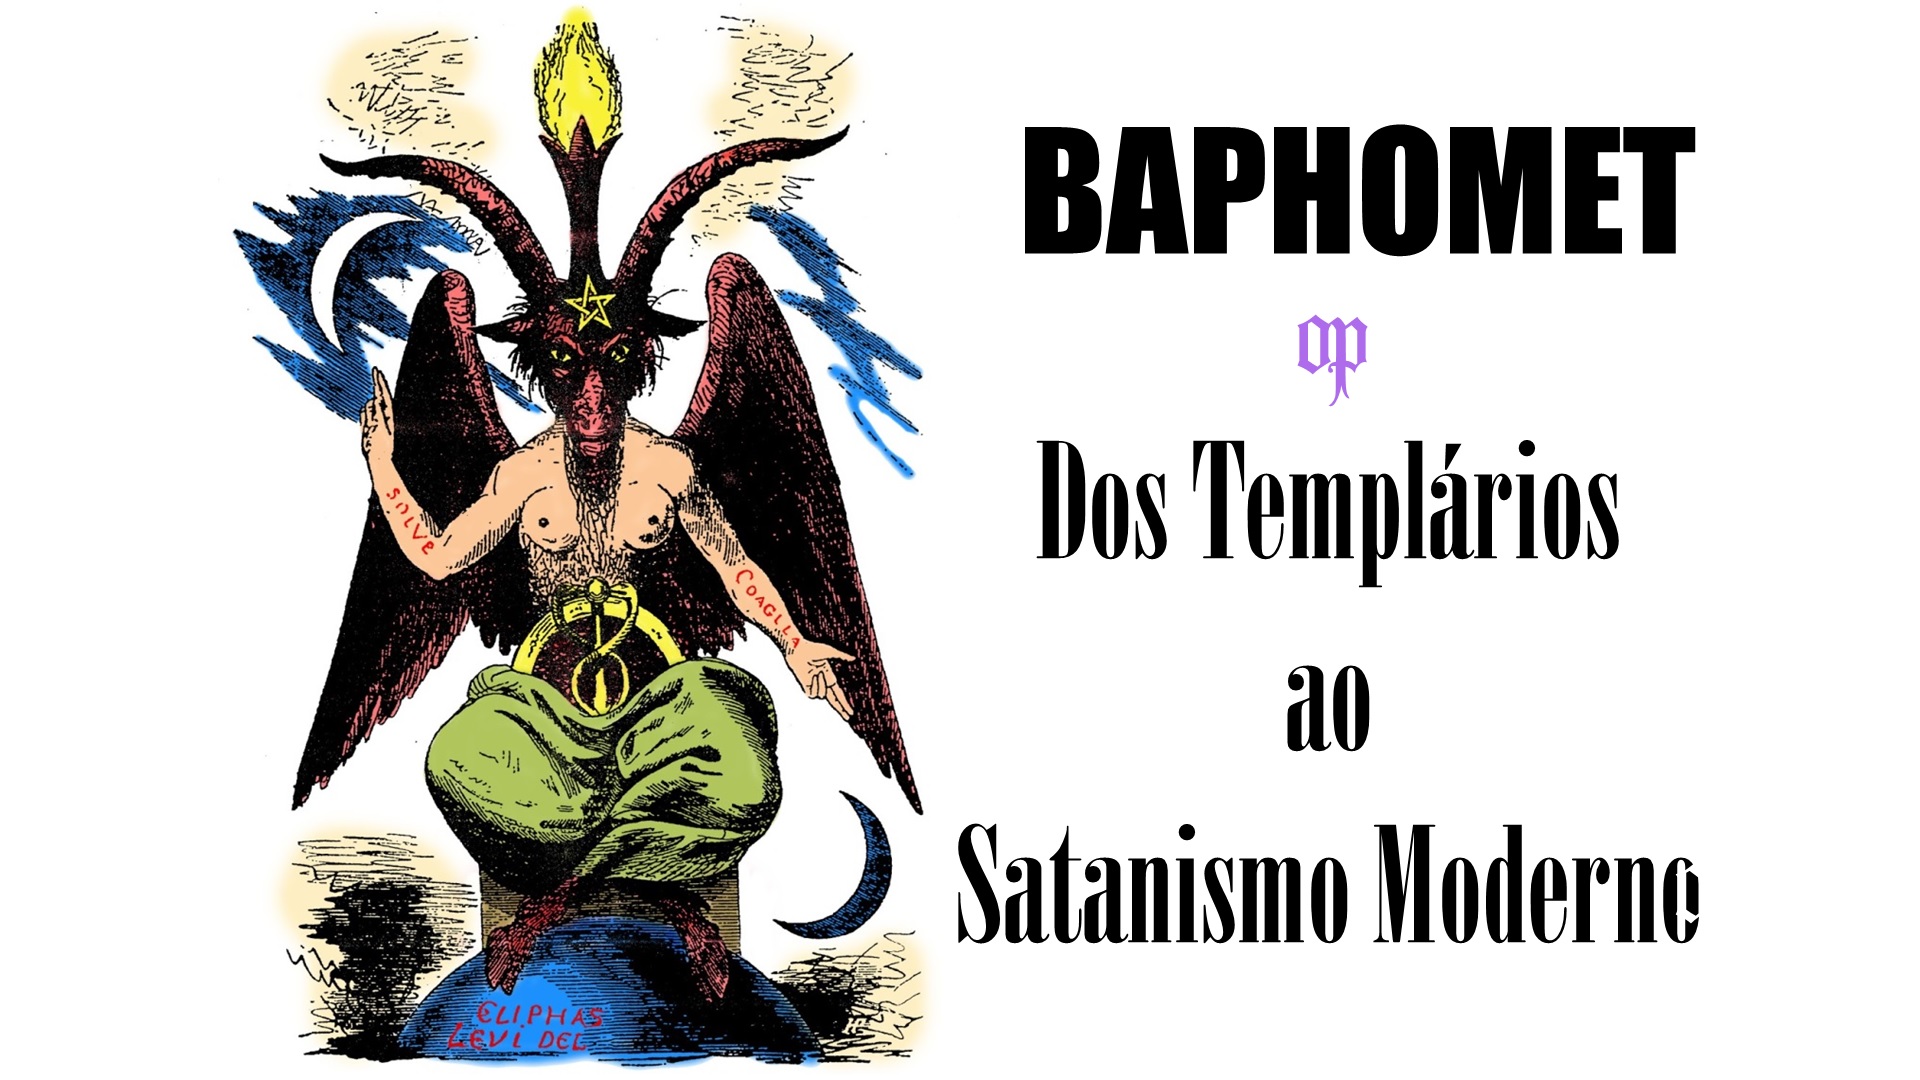 Explore o significado intrigante do Baphomet, desde os Templários até Aleister Crowley. Desmistifique mitos, desvende conexões e descubra a verdade oculta por trás deste símbolo enigmático